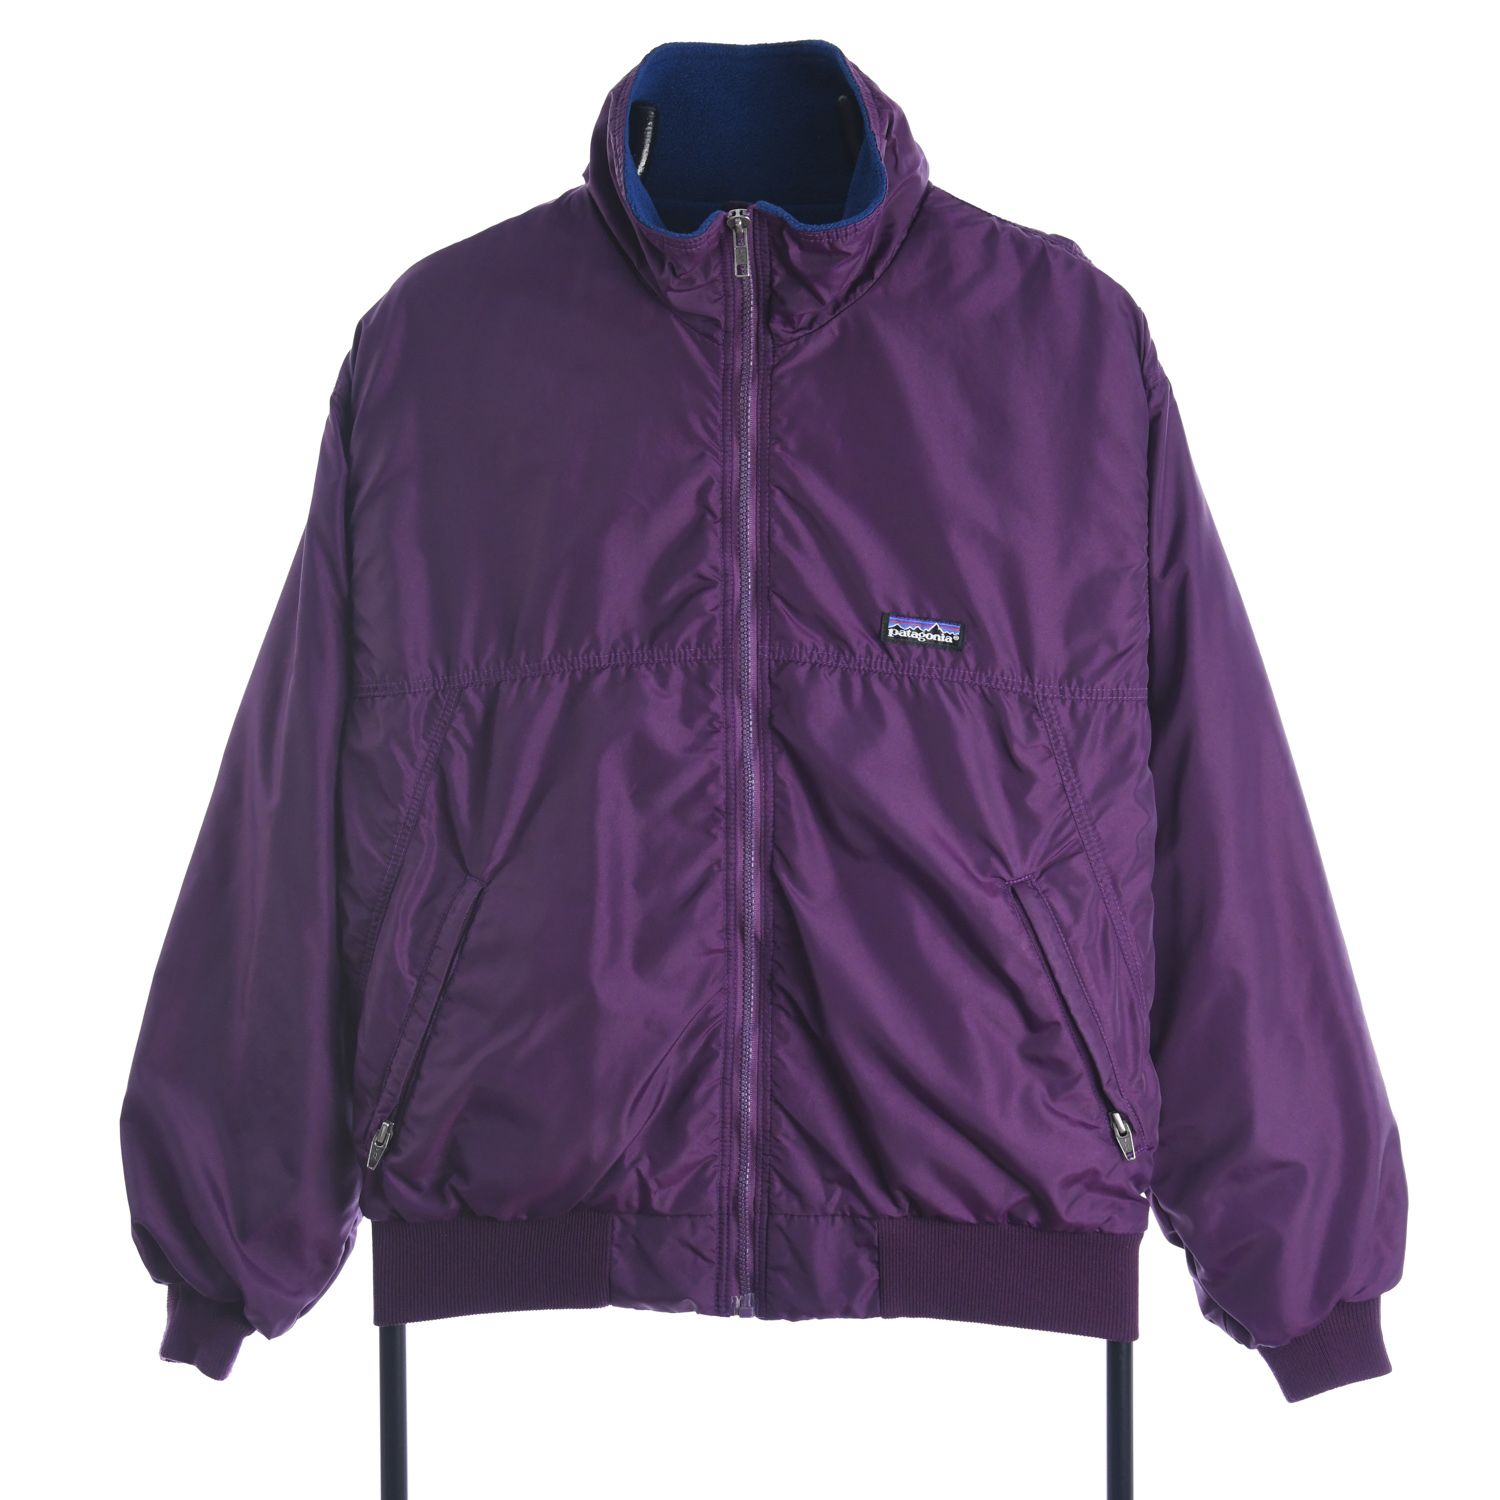 Patagonia 1991 Fleece Lined Jacket